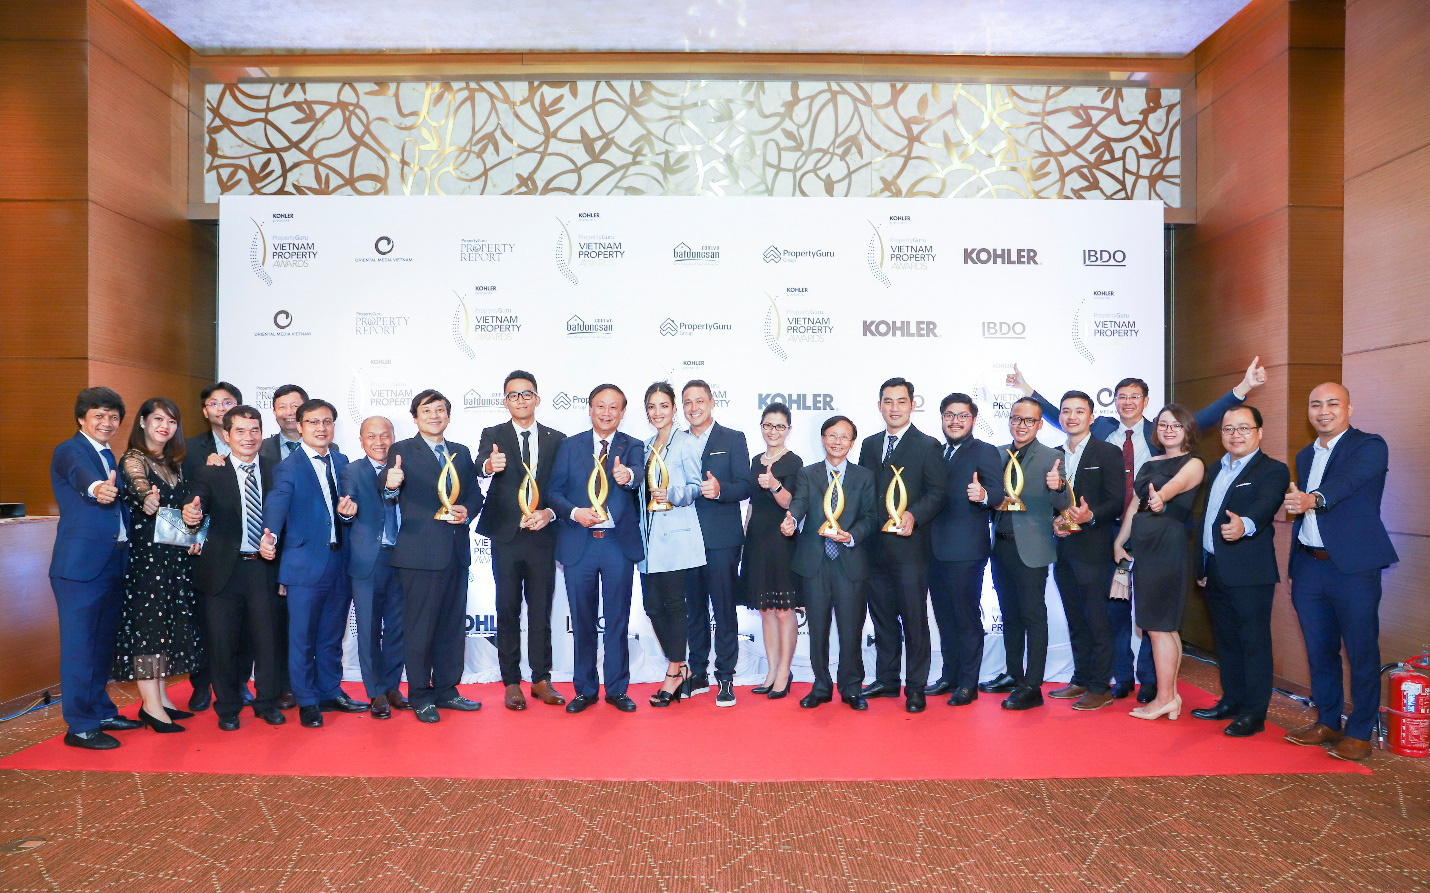 Kiến Á xuất sắc được vinh danh tại PropertyGuru Vietnam Property Awards 2020 với nhiều hạng mục danh giá